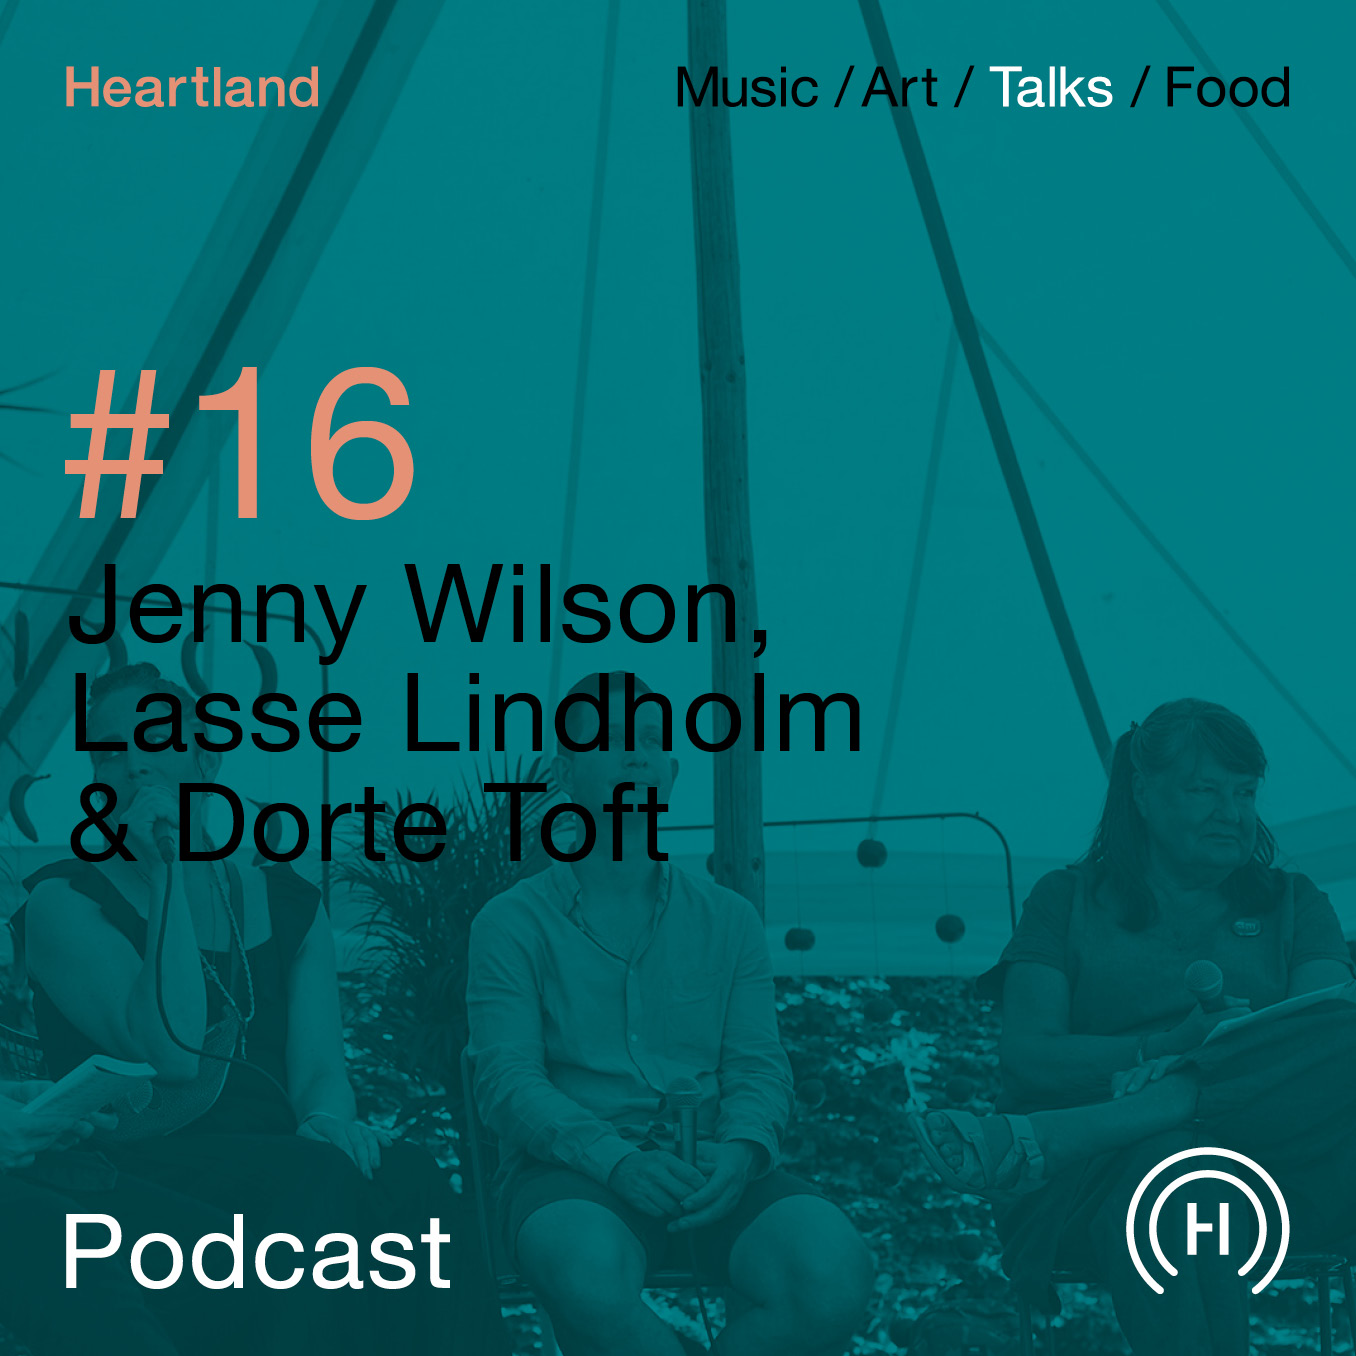 Heartland Festival podcast med Jenny Wilson, Lasse Lindholm og Dorte Toft